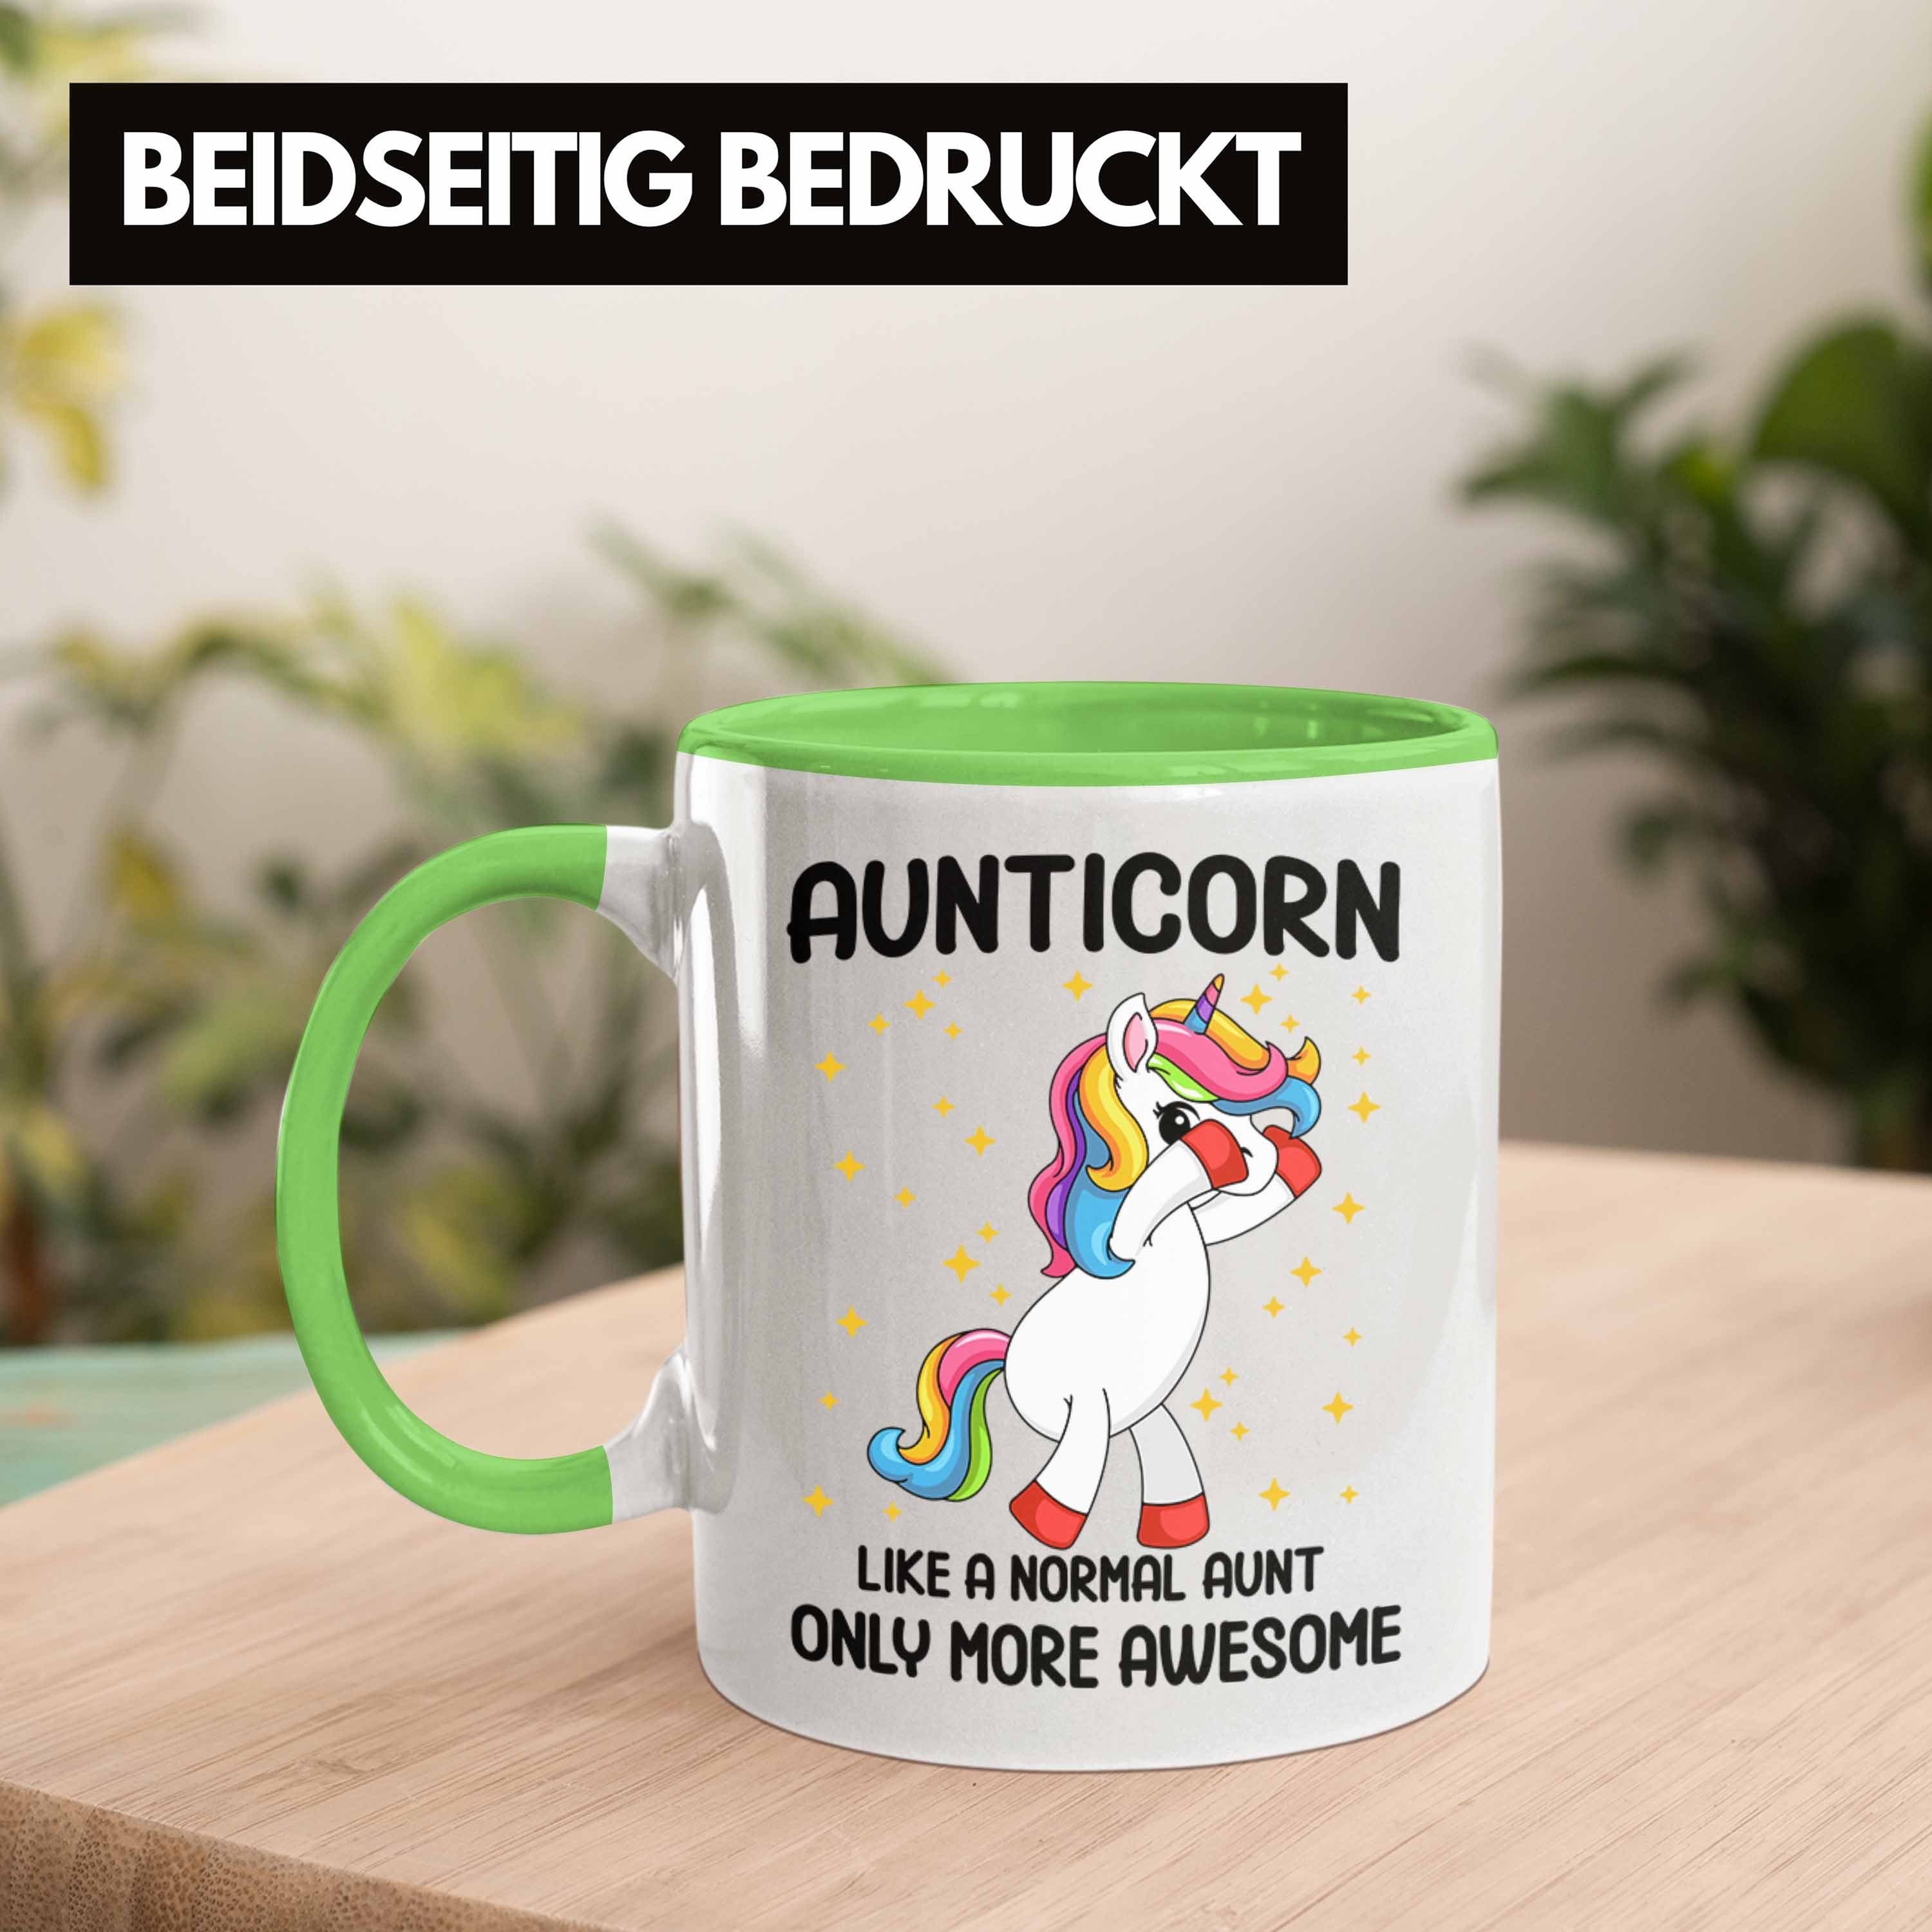 Trendation Lustig Geschenkidee Grün Tasse Aunticorn Kaffeetasse Trendation Tante Tasse - Geschenk Tante Beste Geschenk